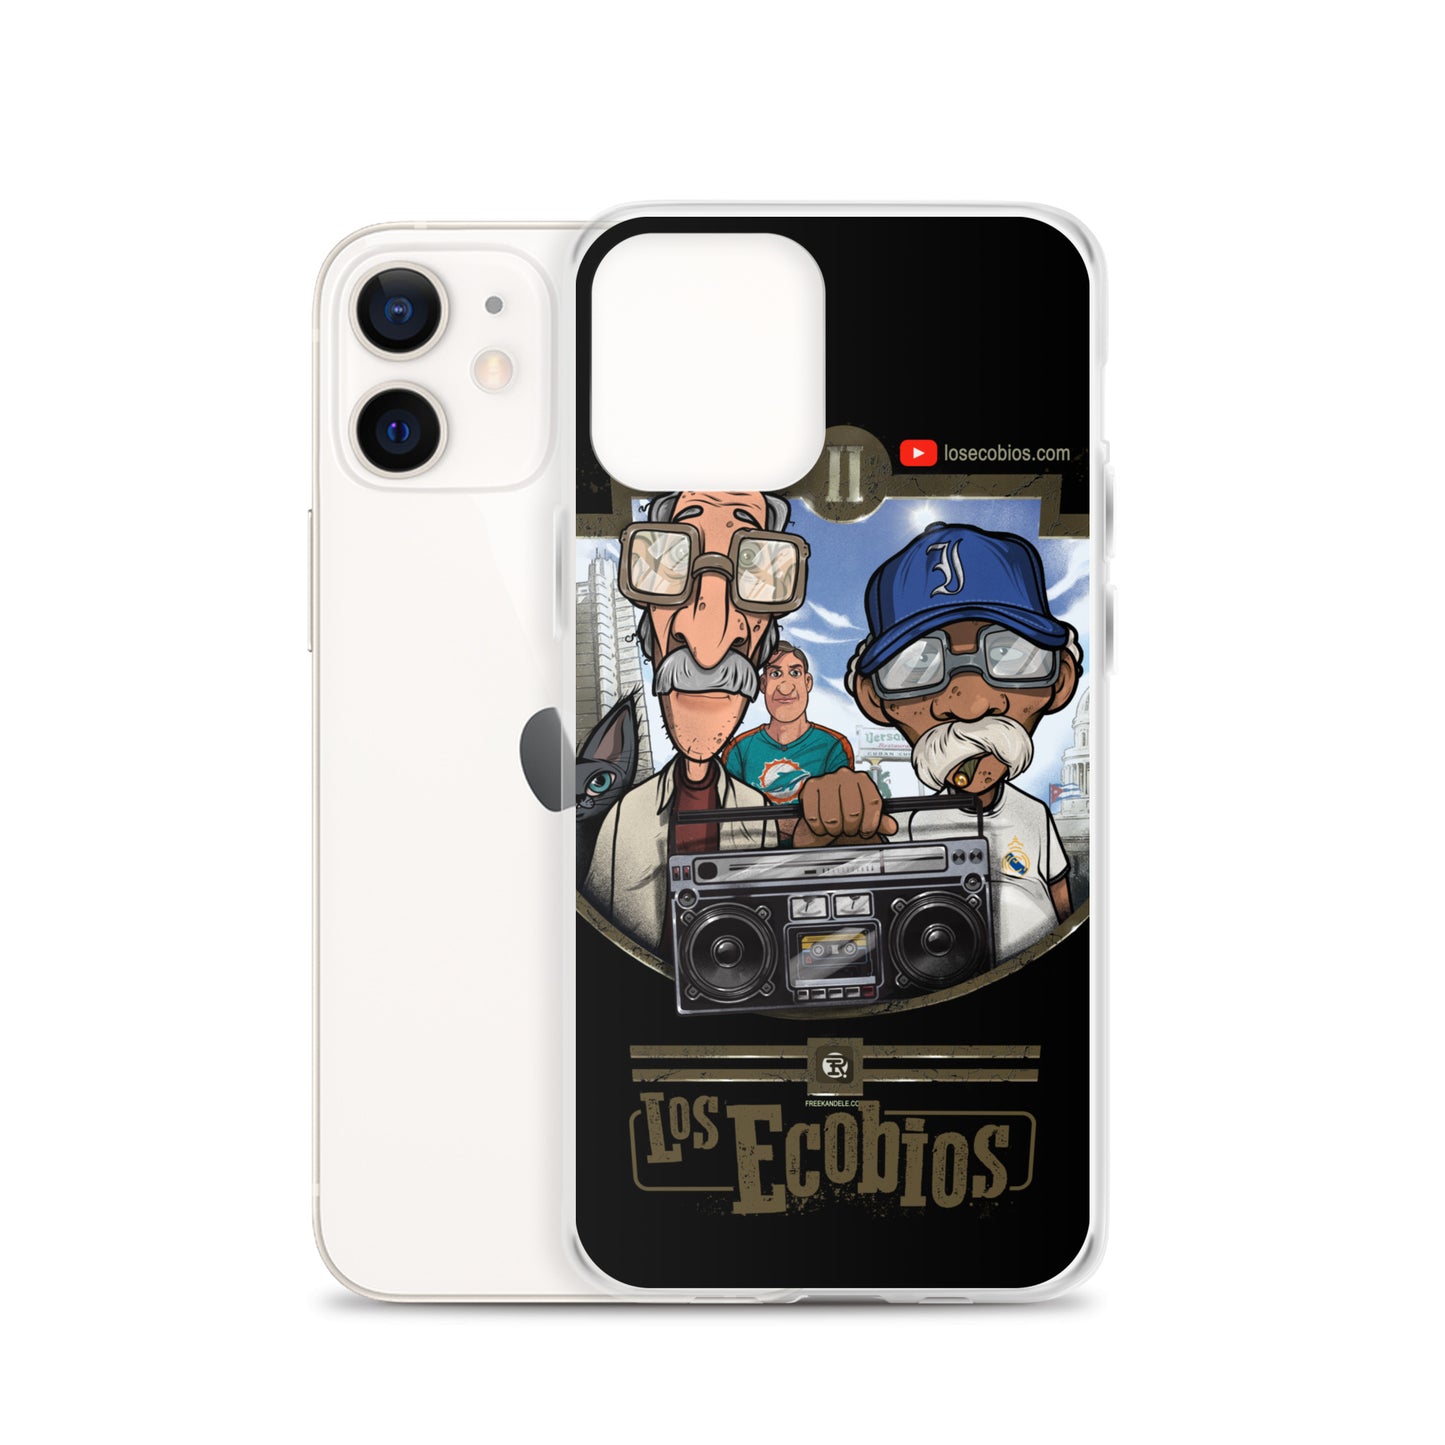 "Los Ecobios" Classic iPhone Case